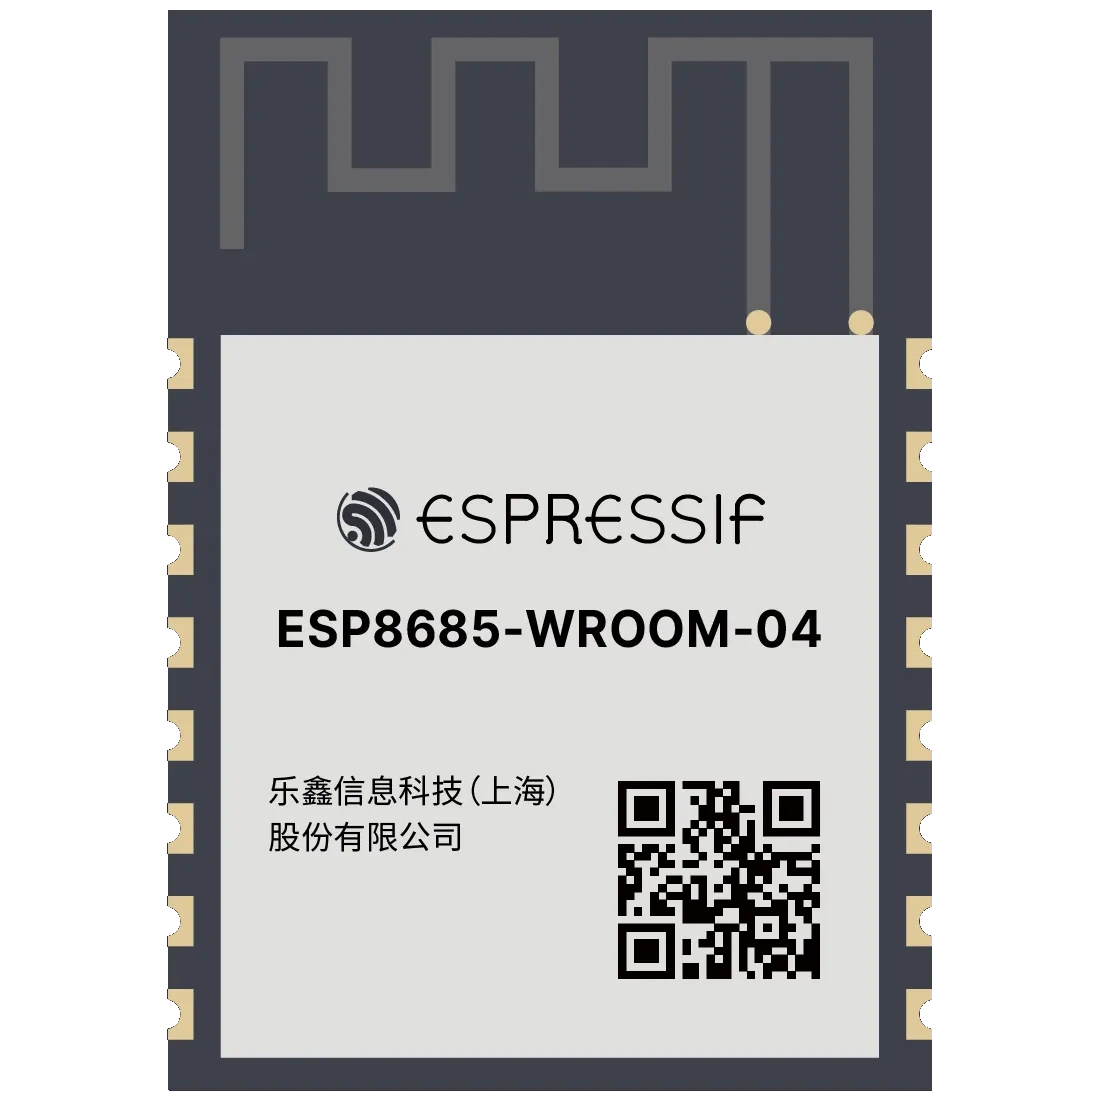 ESP8685-WROOM-04 ESP32-C3 ESP-12 Compatible